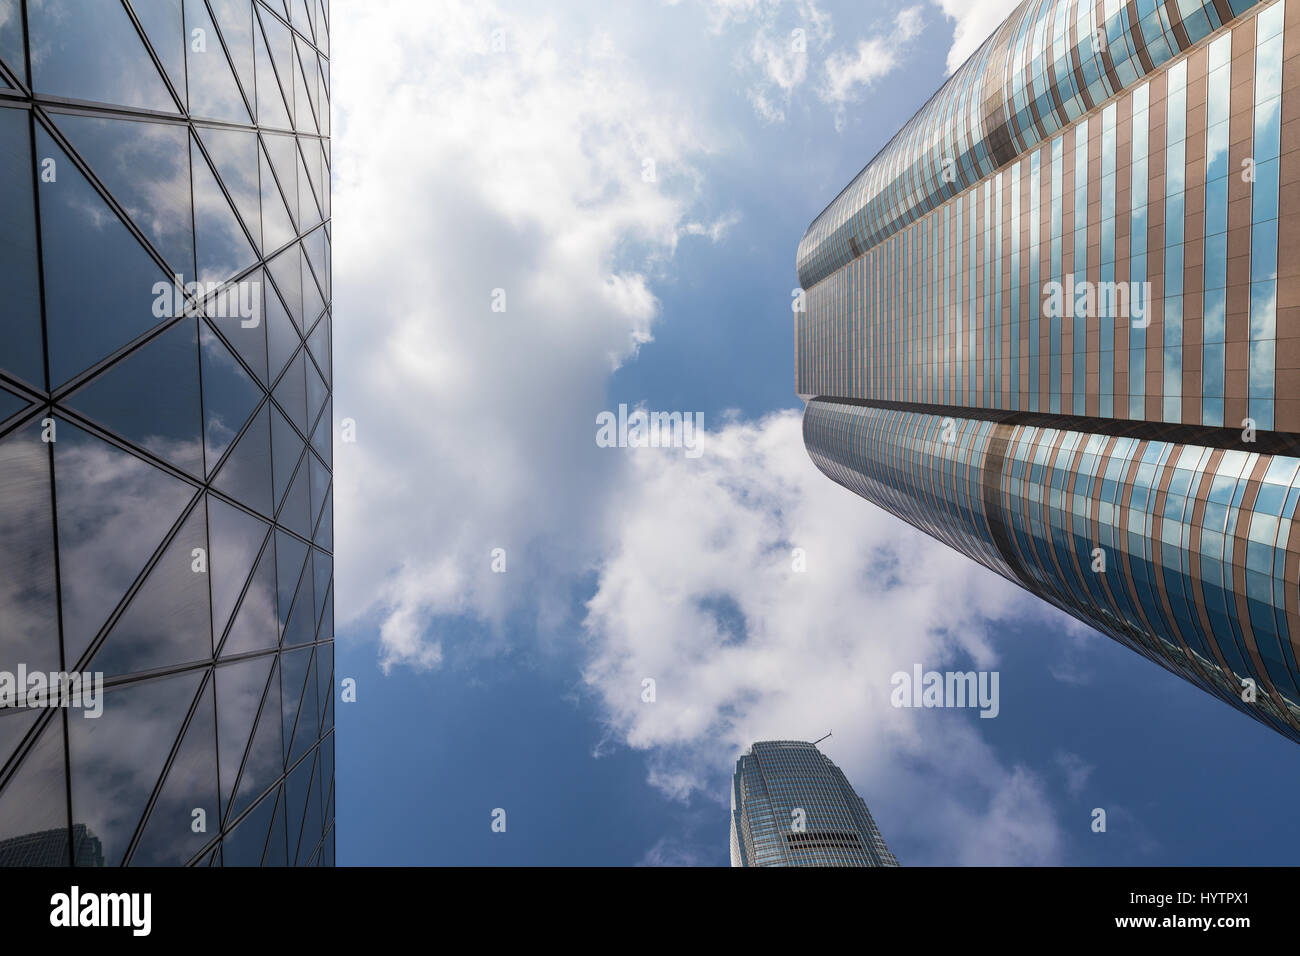 Immagini di IFC, l'edificio più alto di Hong Kong sull'isola. Riflessioni dell'edificio catturata su un raro cielo blu chiaro Giorno in Hong Kong. Foto Stock